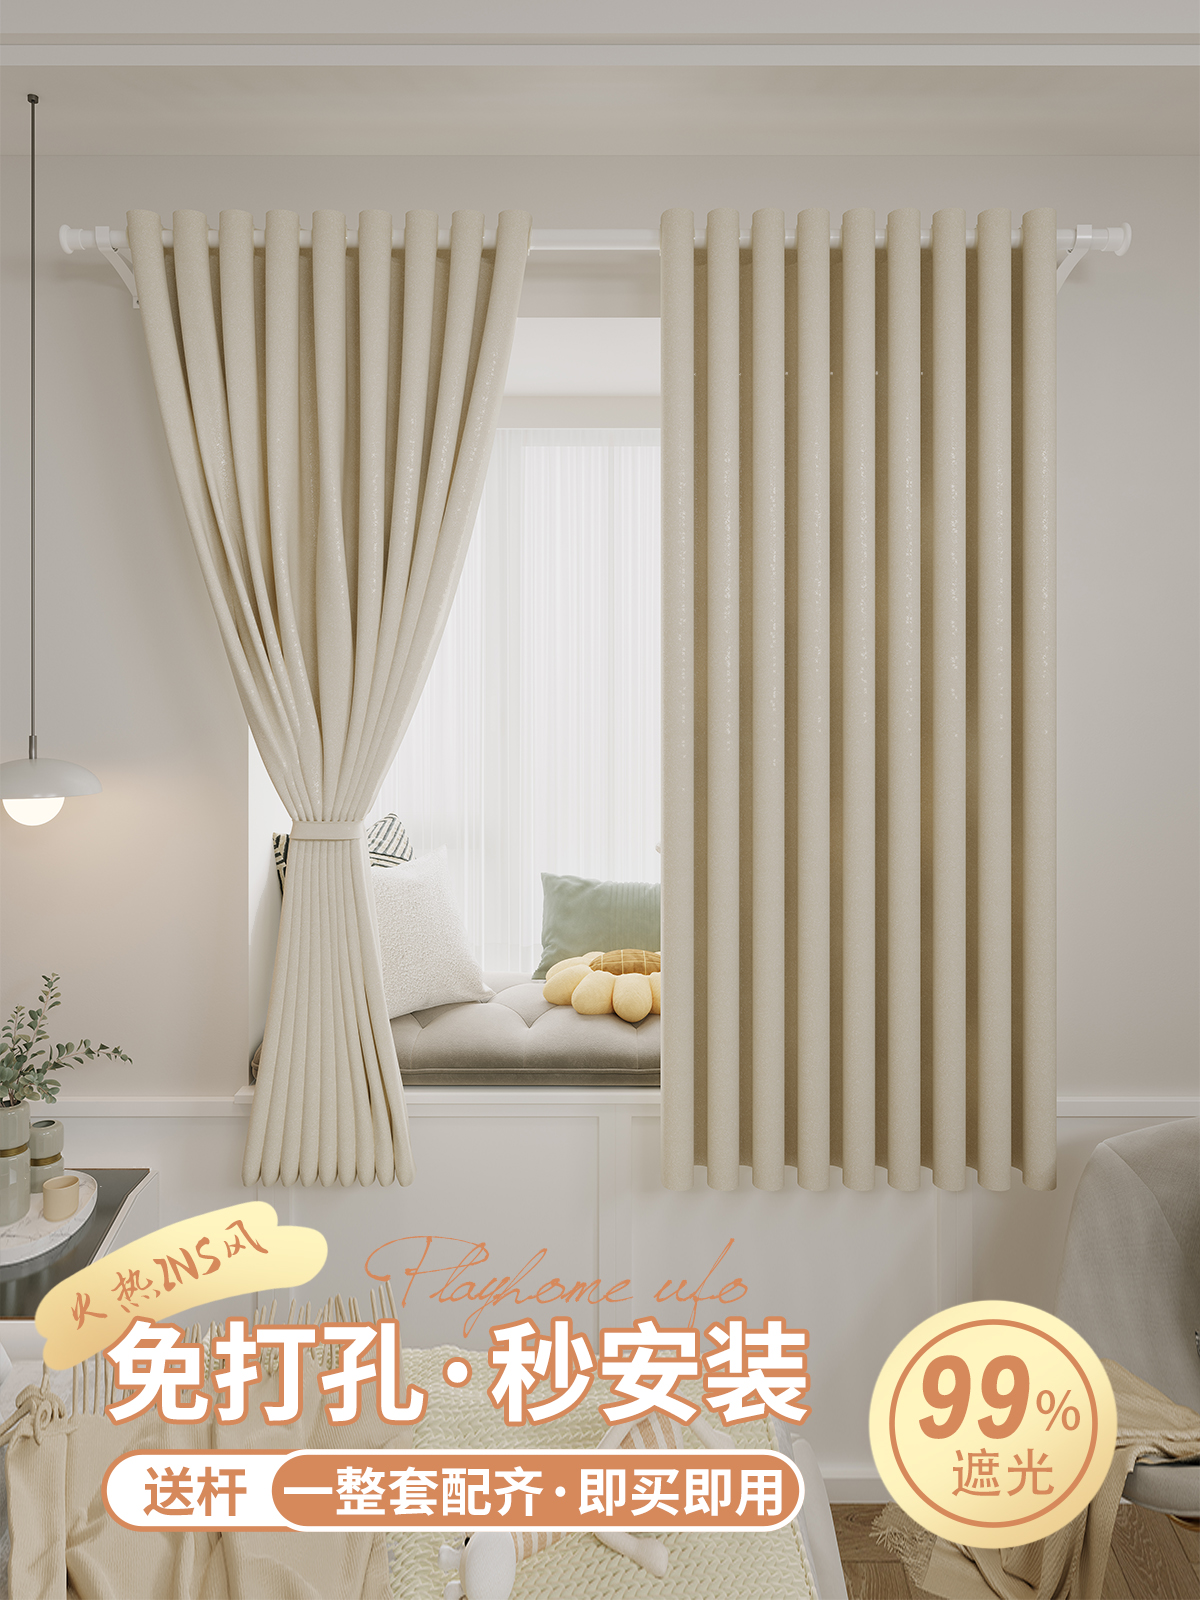 簡約現代風格全遮光窗簾輕鬆打造舒適臥室空間